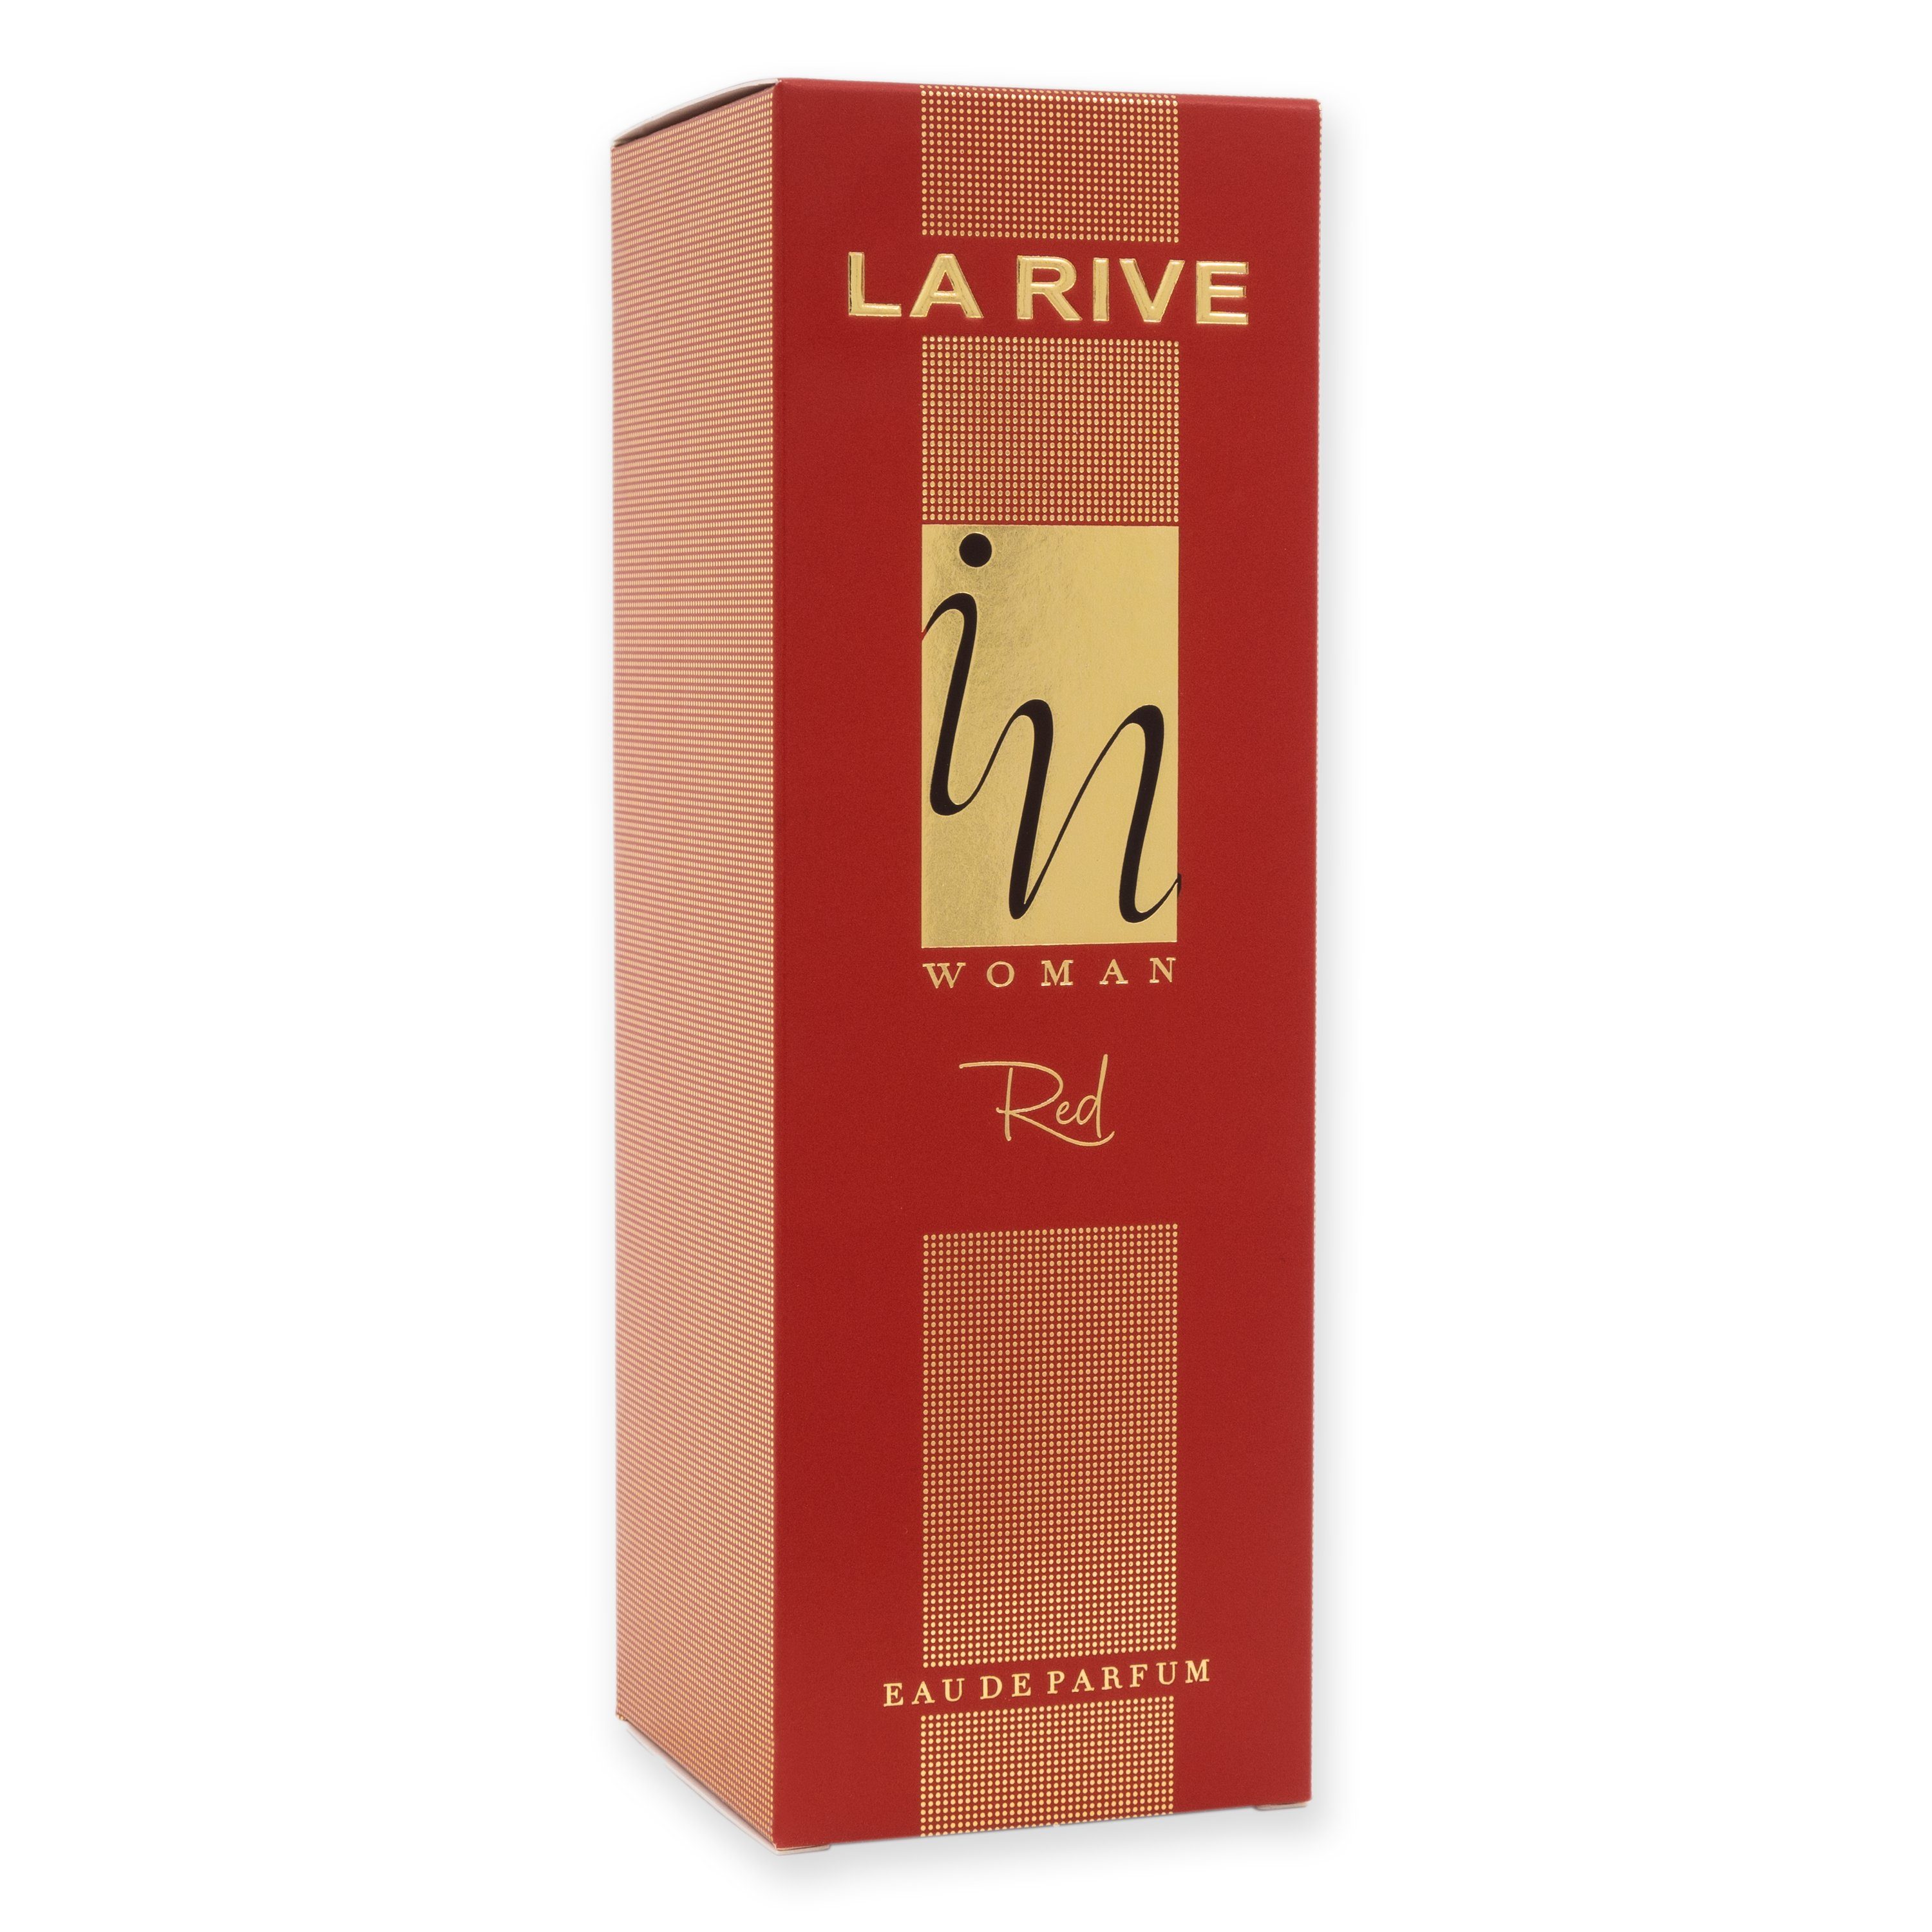 La Rive Eau de Eau RIVE - Parfum de In ml - Red 100 LA Parfum Woman